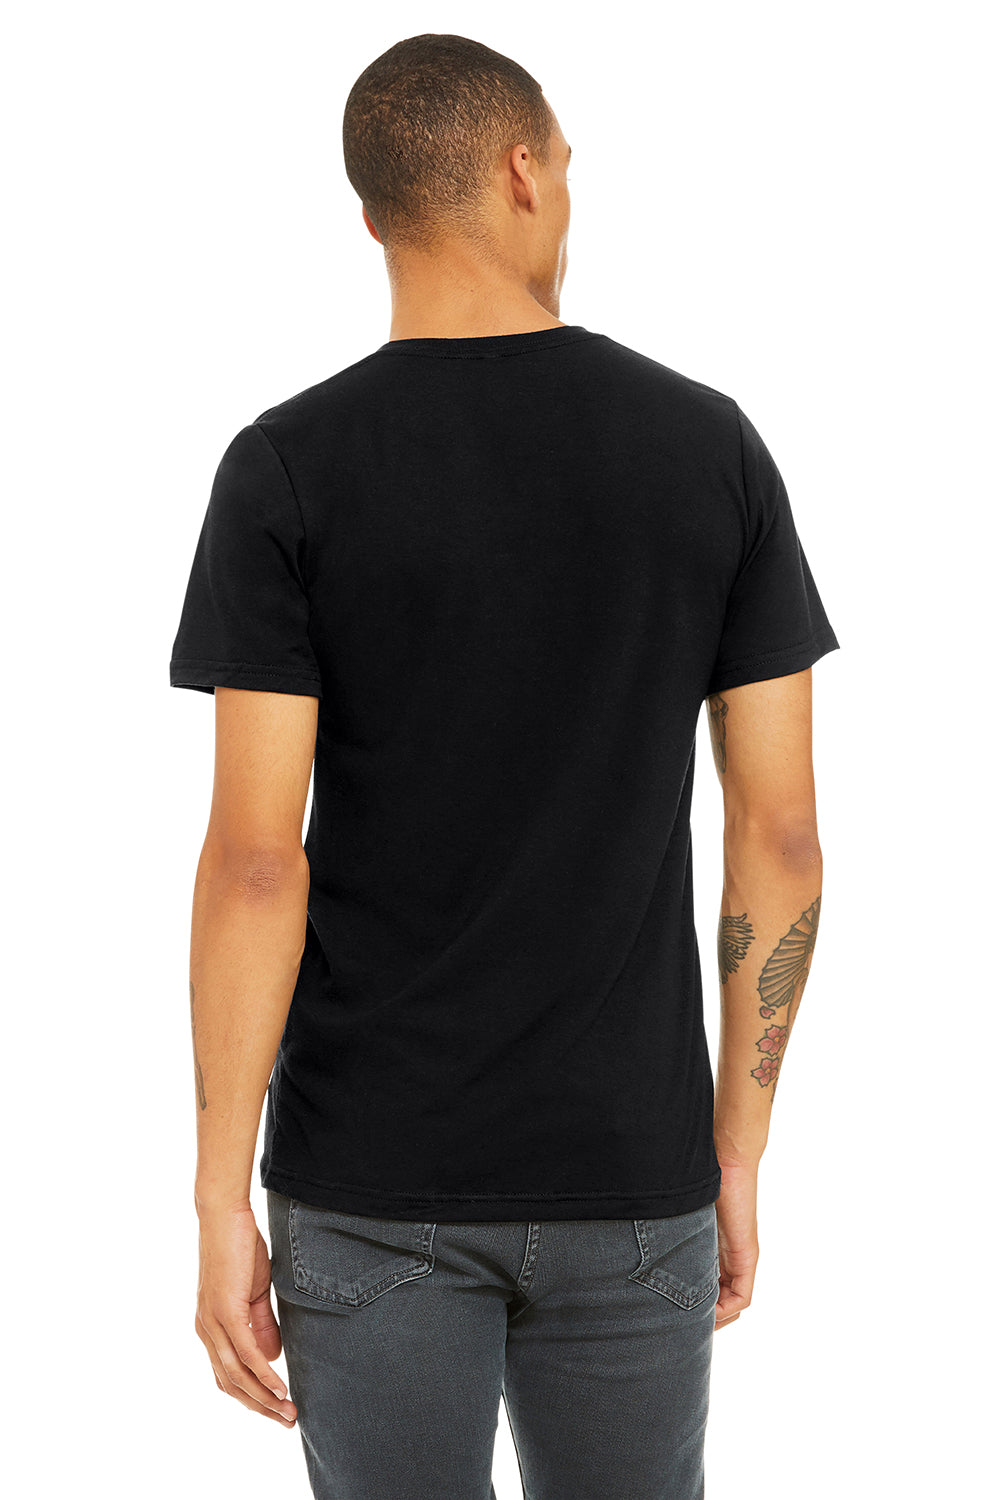 Bella + Canvas BC3415/3415C/3415 Mens Short Sleeve V-Neck T-Shirt Solid Black Model Back